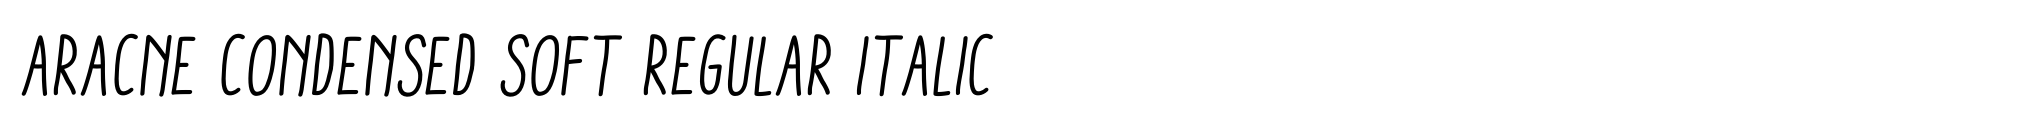 Aracne Condensed Soft Regular Italic image